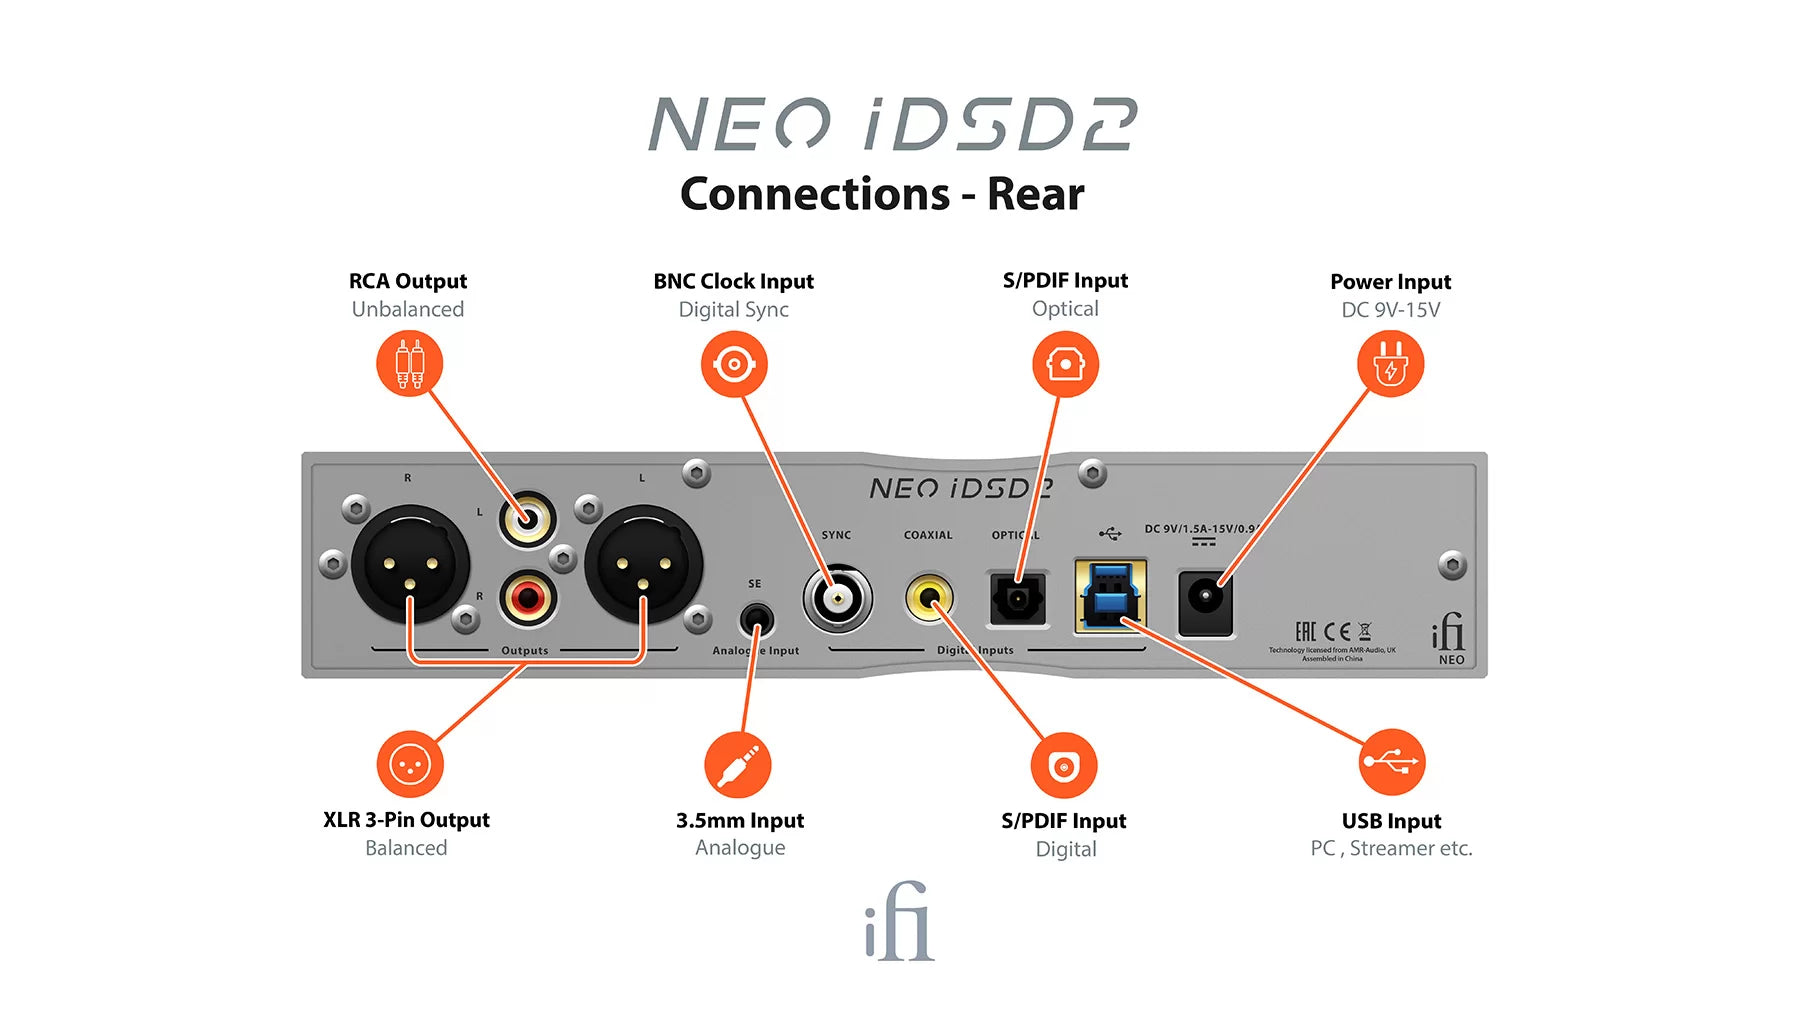 iFi NEO iDSD 2 DAC / kuulokevahvistin.